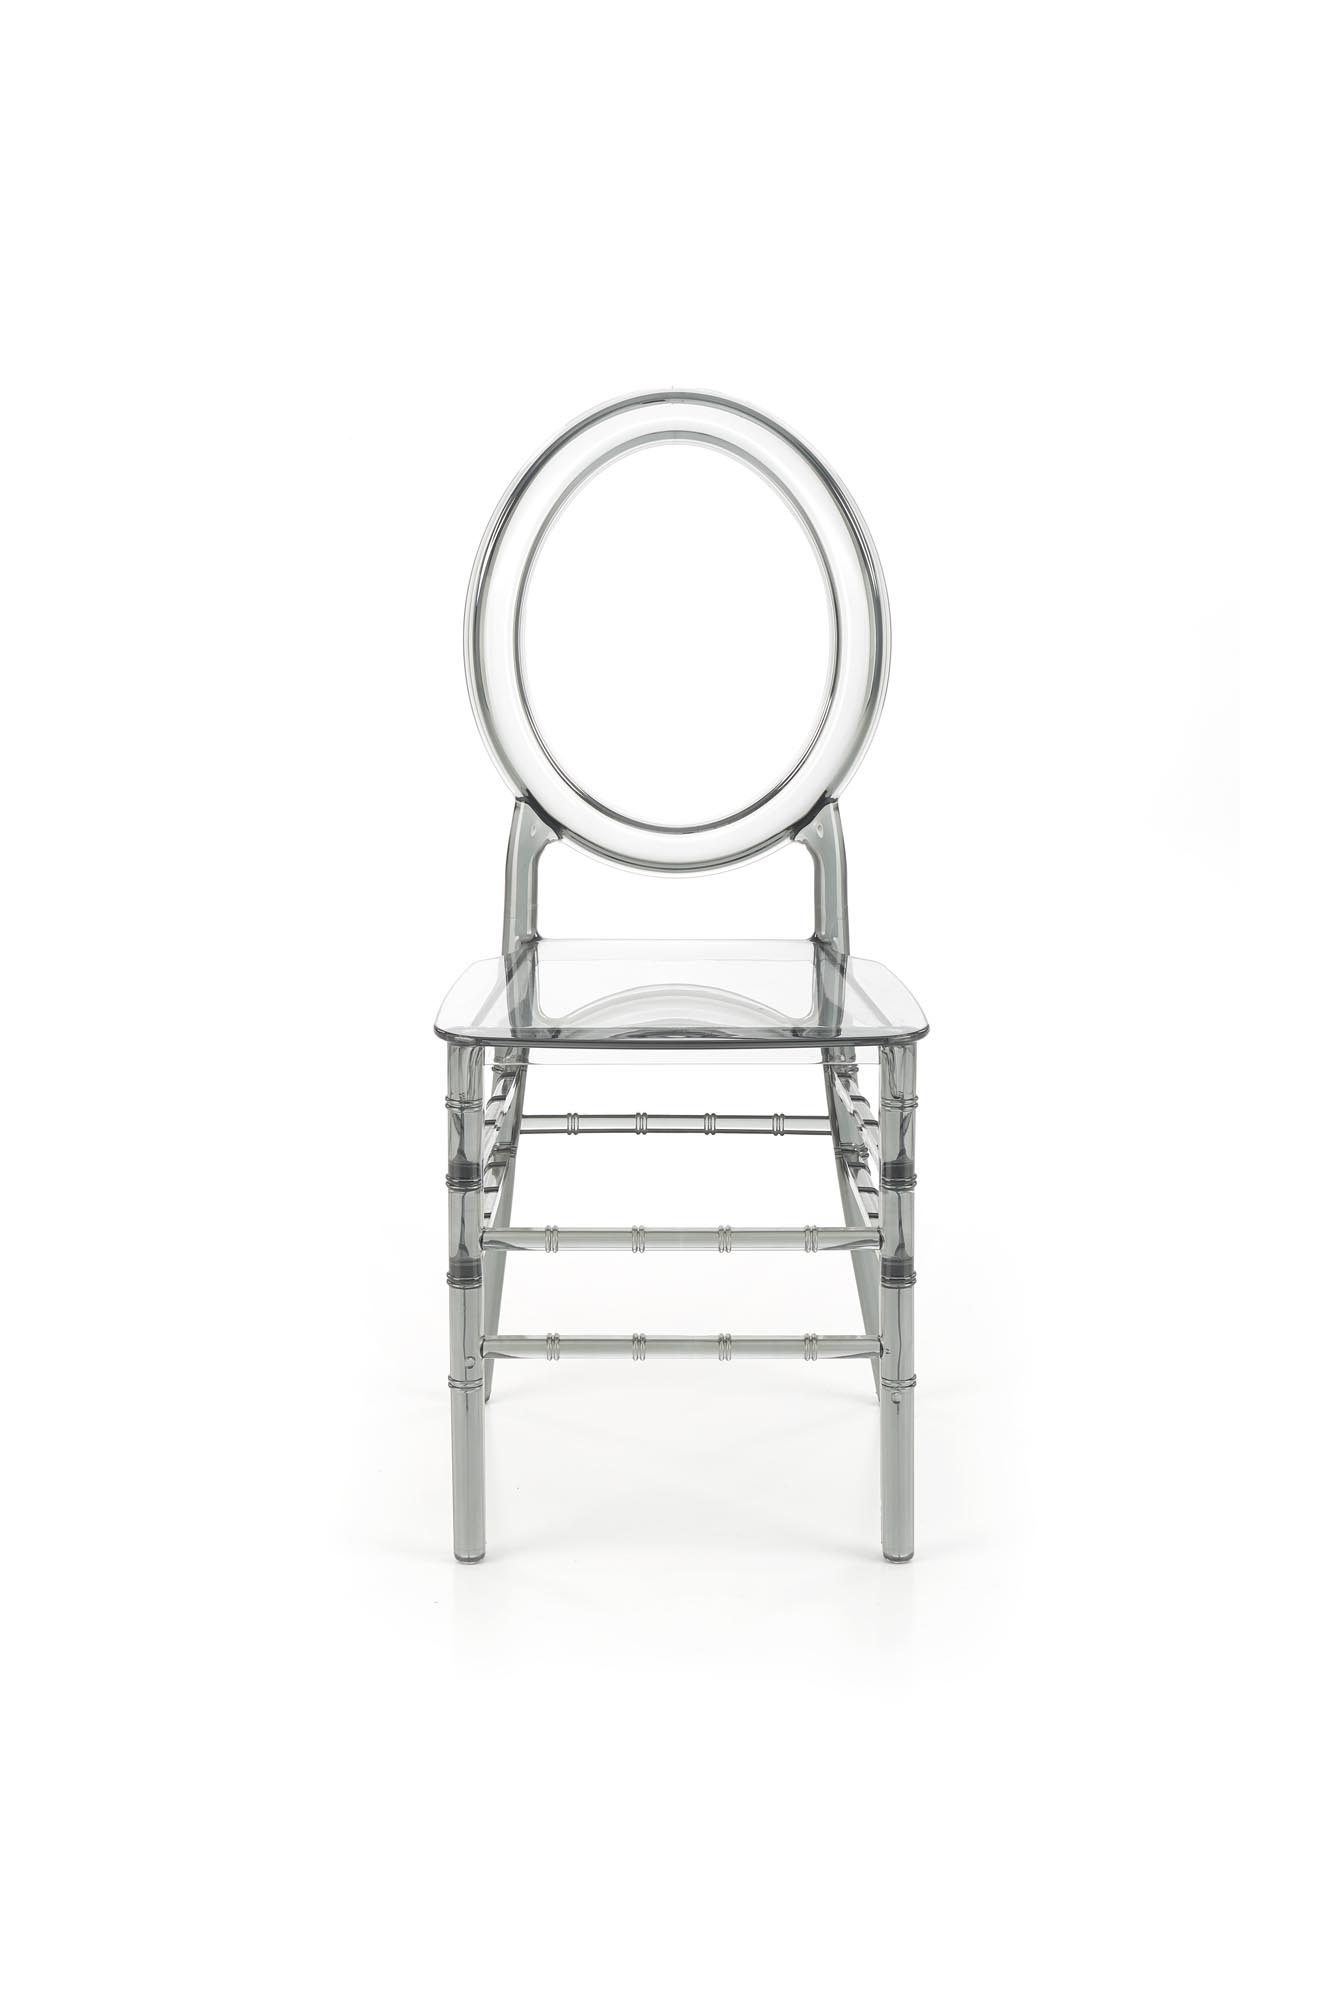 K513 Židle polykarbonát, kouřový Židle z poliweglanu k513 - kouřový